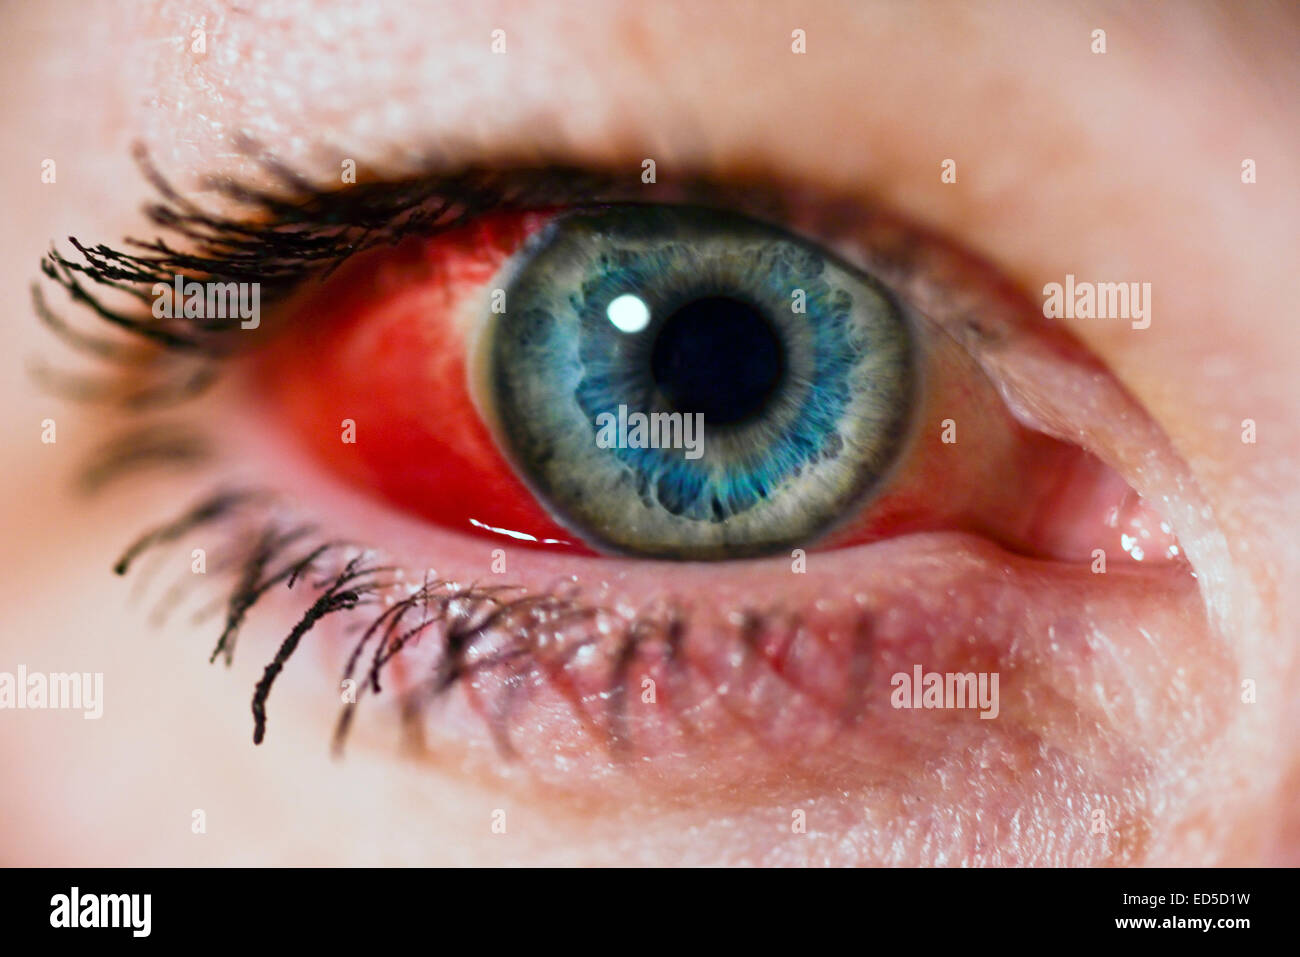 Woman's eye avec un vaisseau sanguin (hémorragie sous-conjonctivale) Banque D'Images